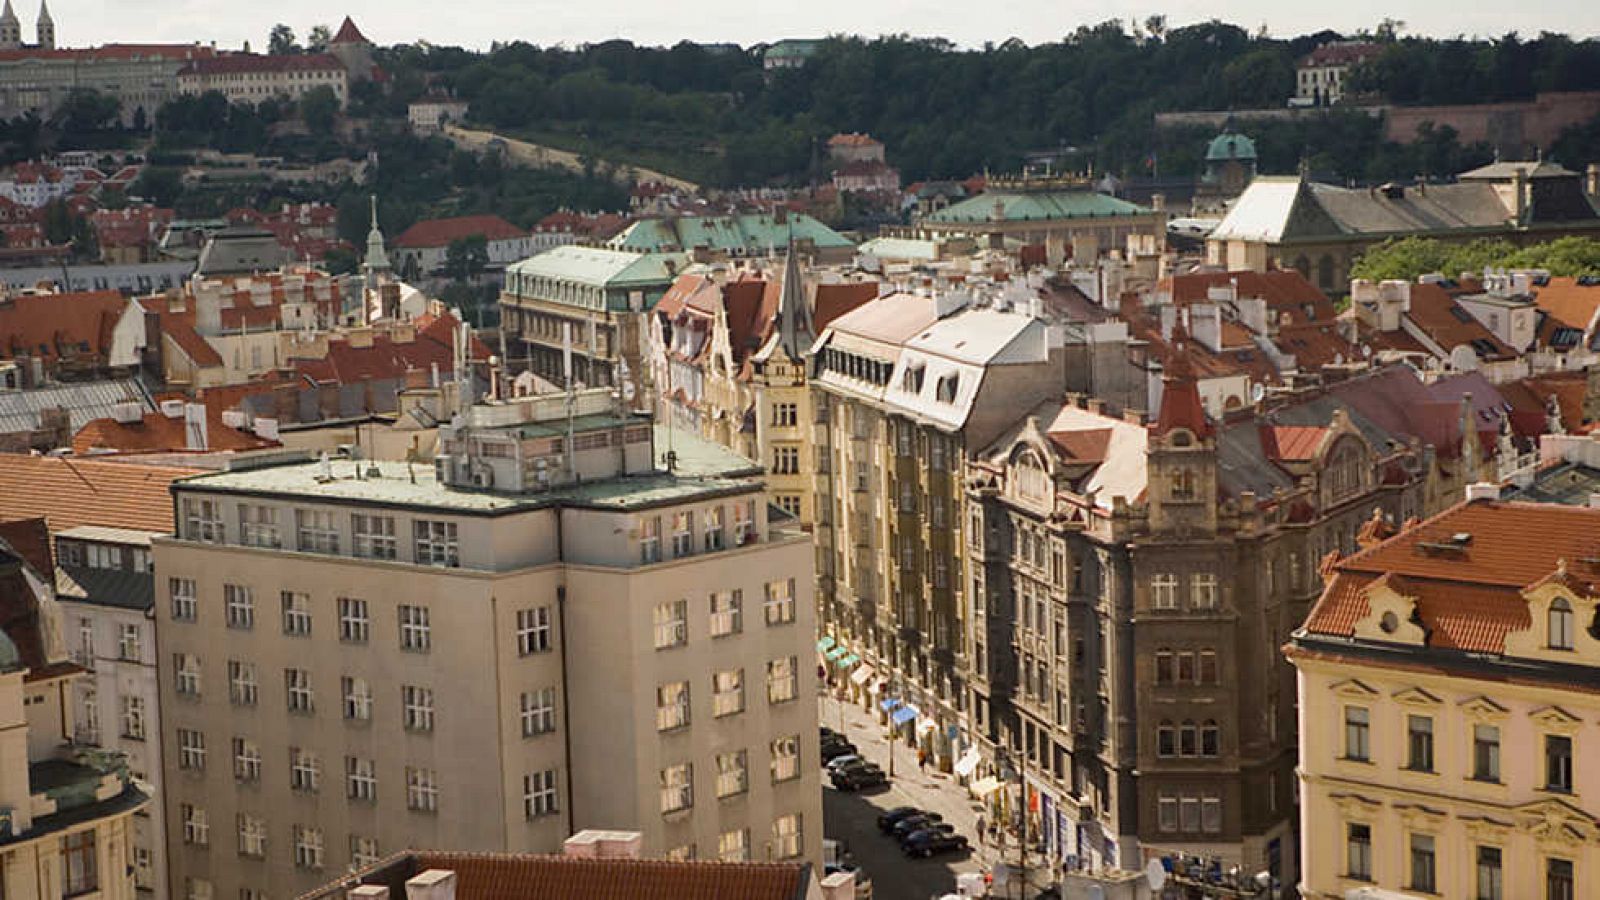 Grandes documentales - Grandes viajes ferroviarios continentales: De Praga a Munich